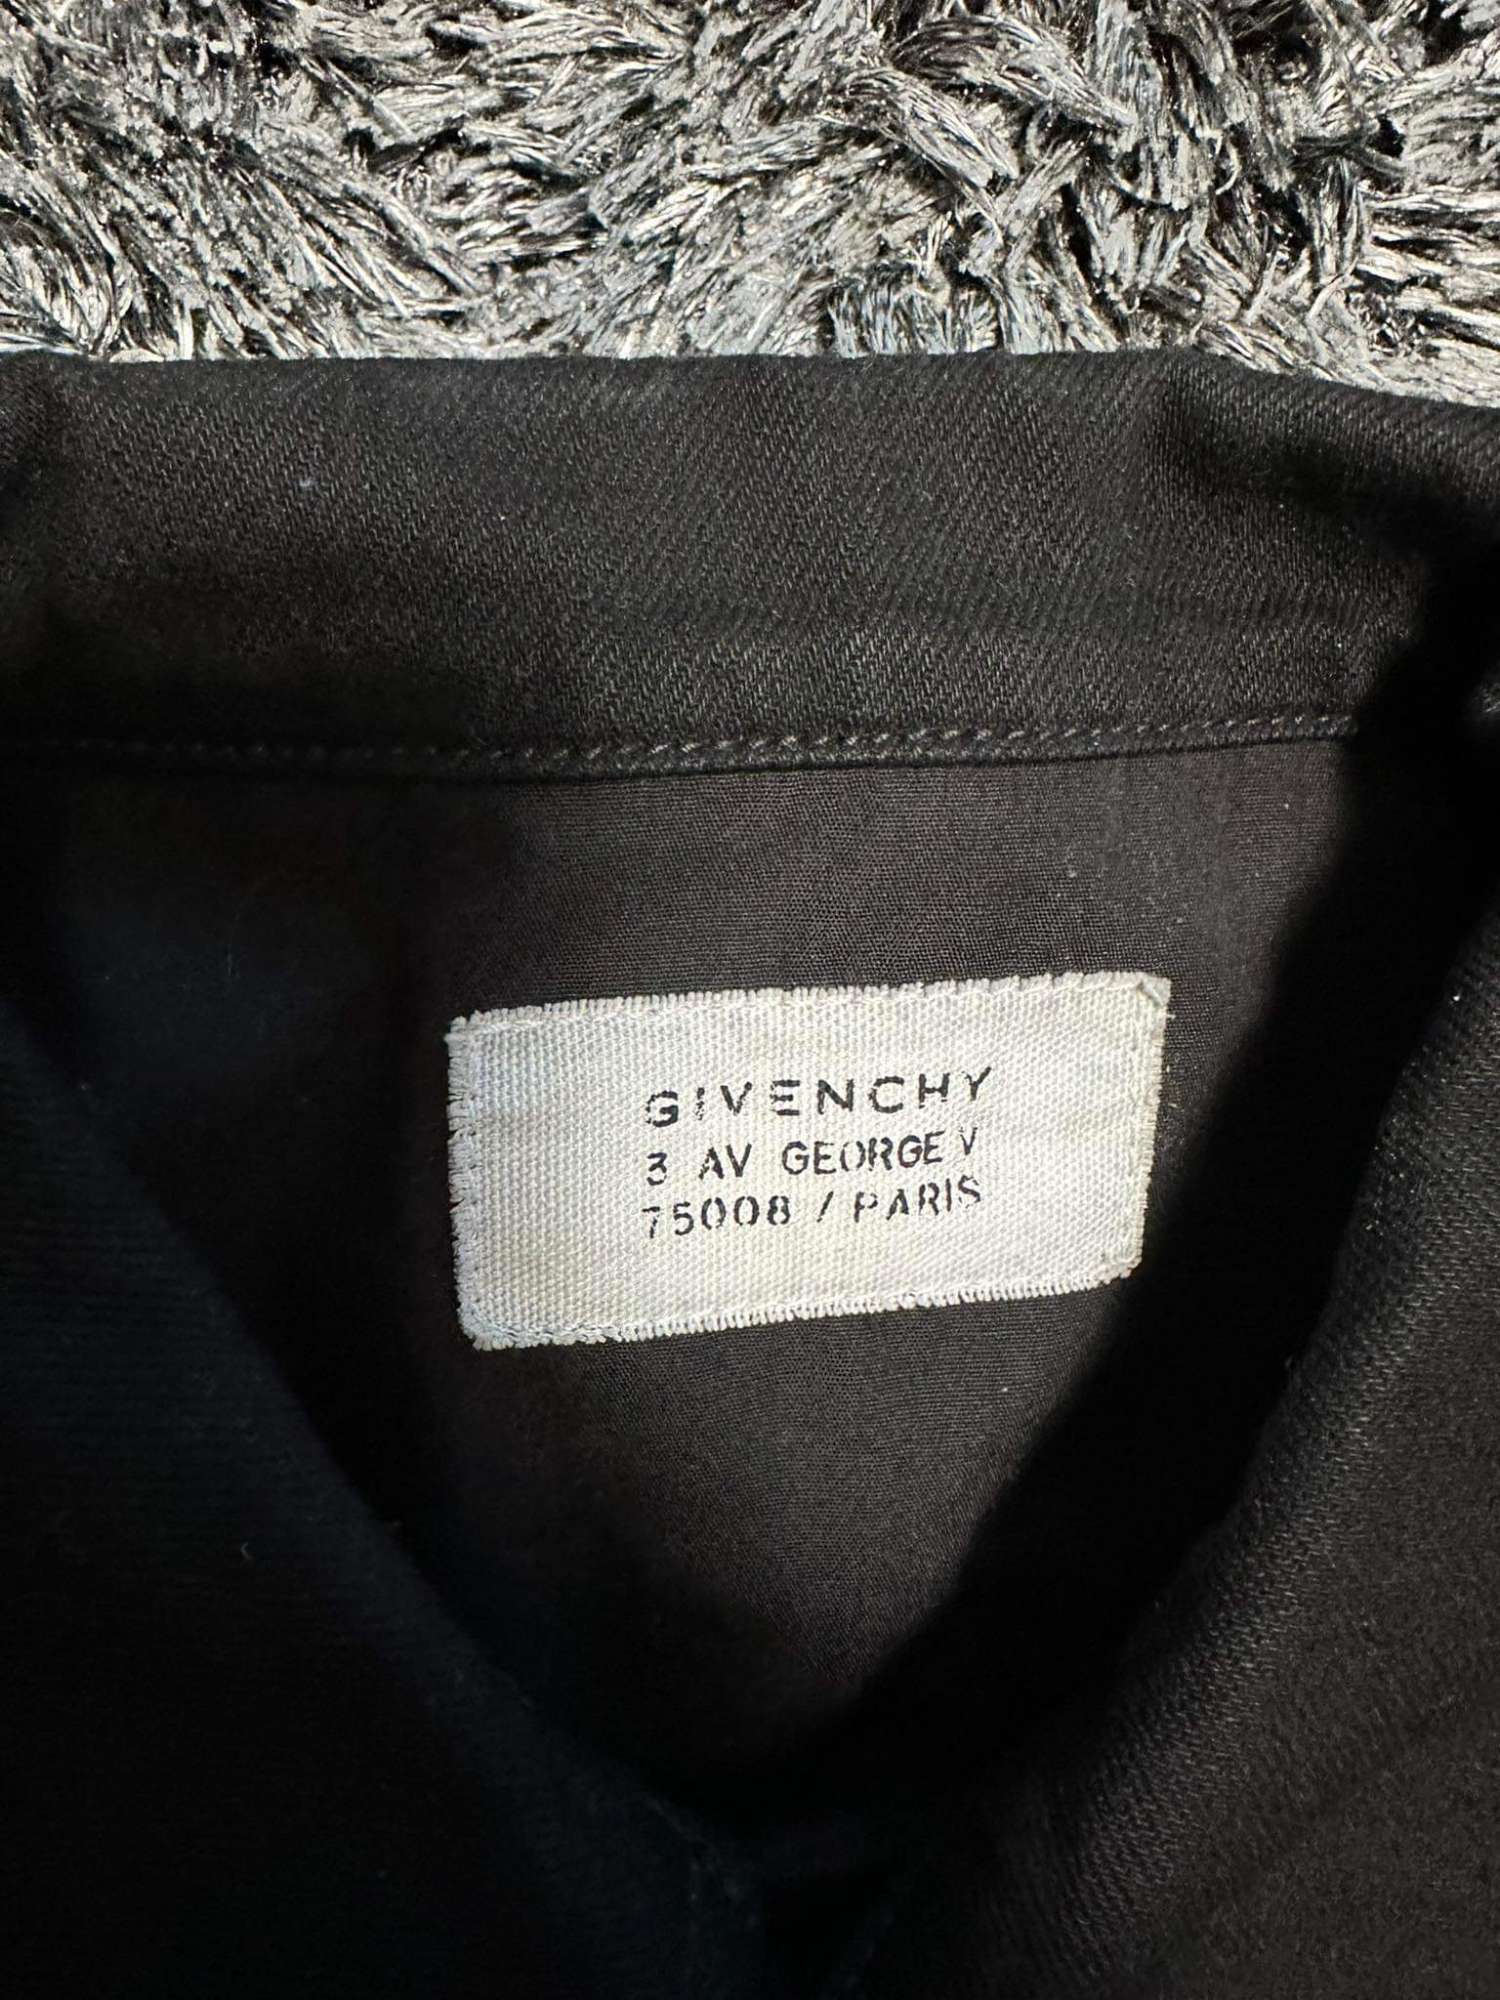 Givenchy riflova bunda